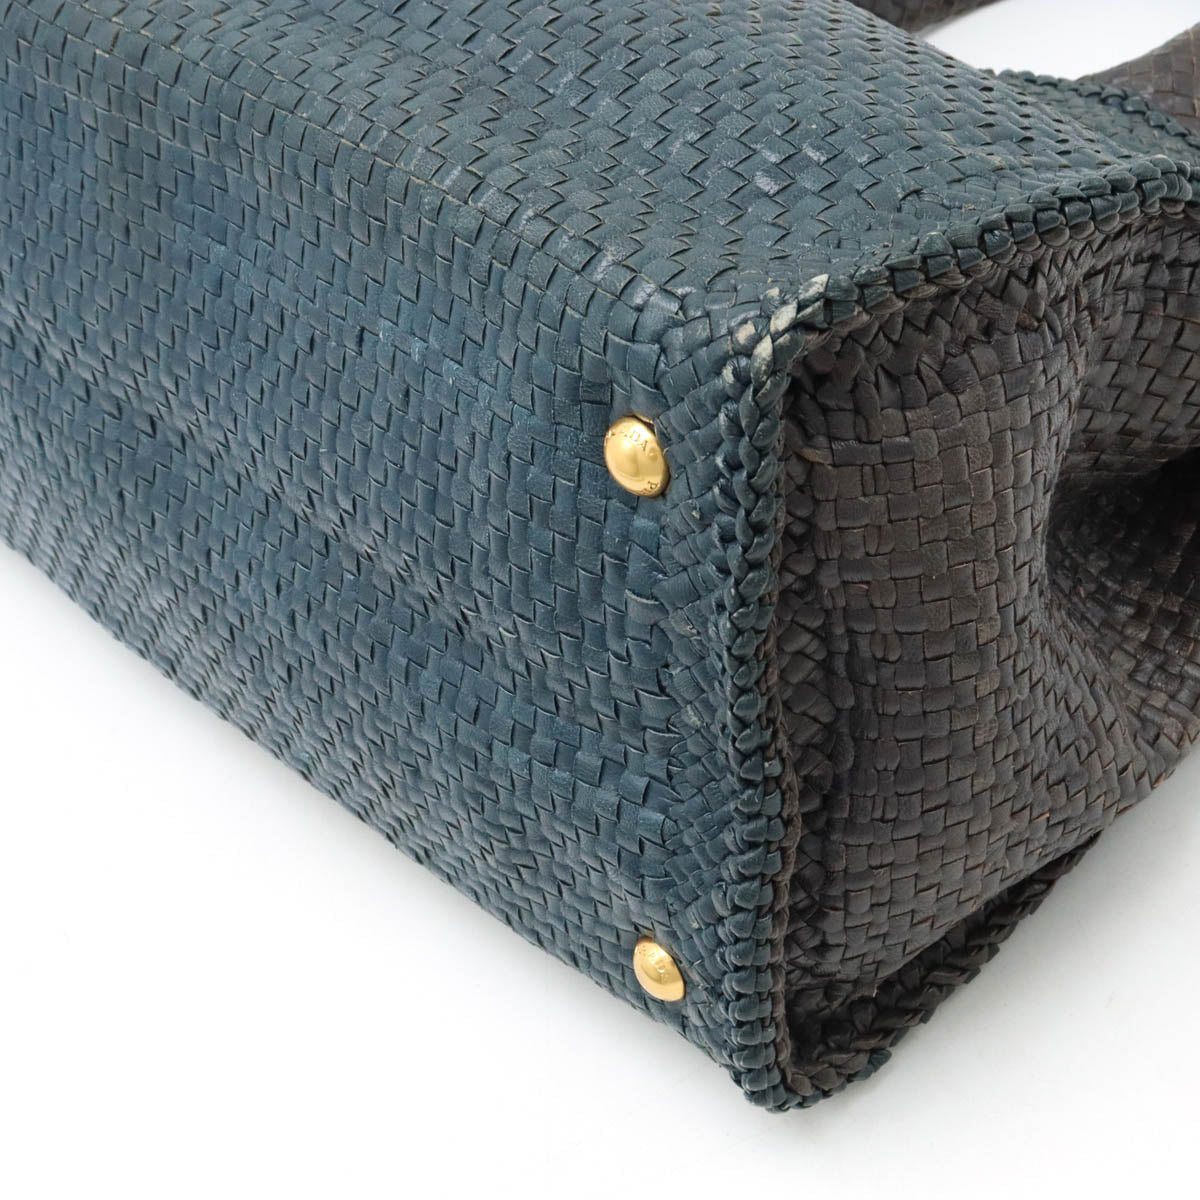 PRADA PRADA MADRAS MADRAS Handbag 2WAY Shoulder Bag Leather COBALTO BLUE Overseas Boutique Purchases BN2584